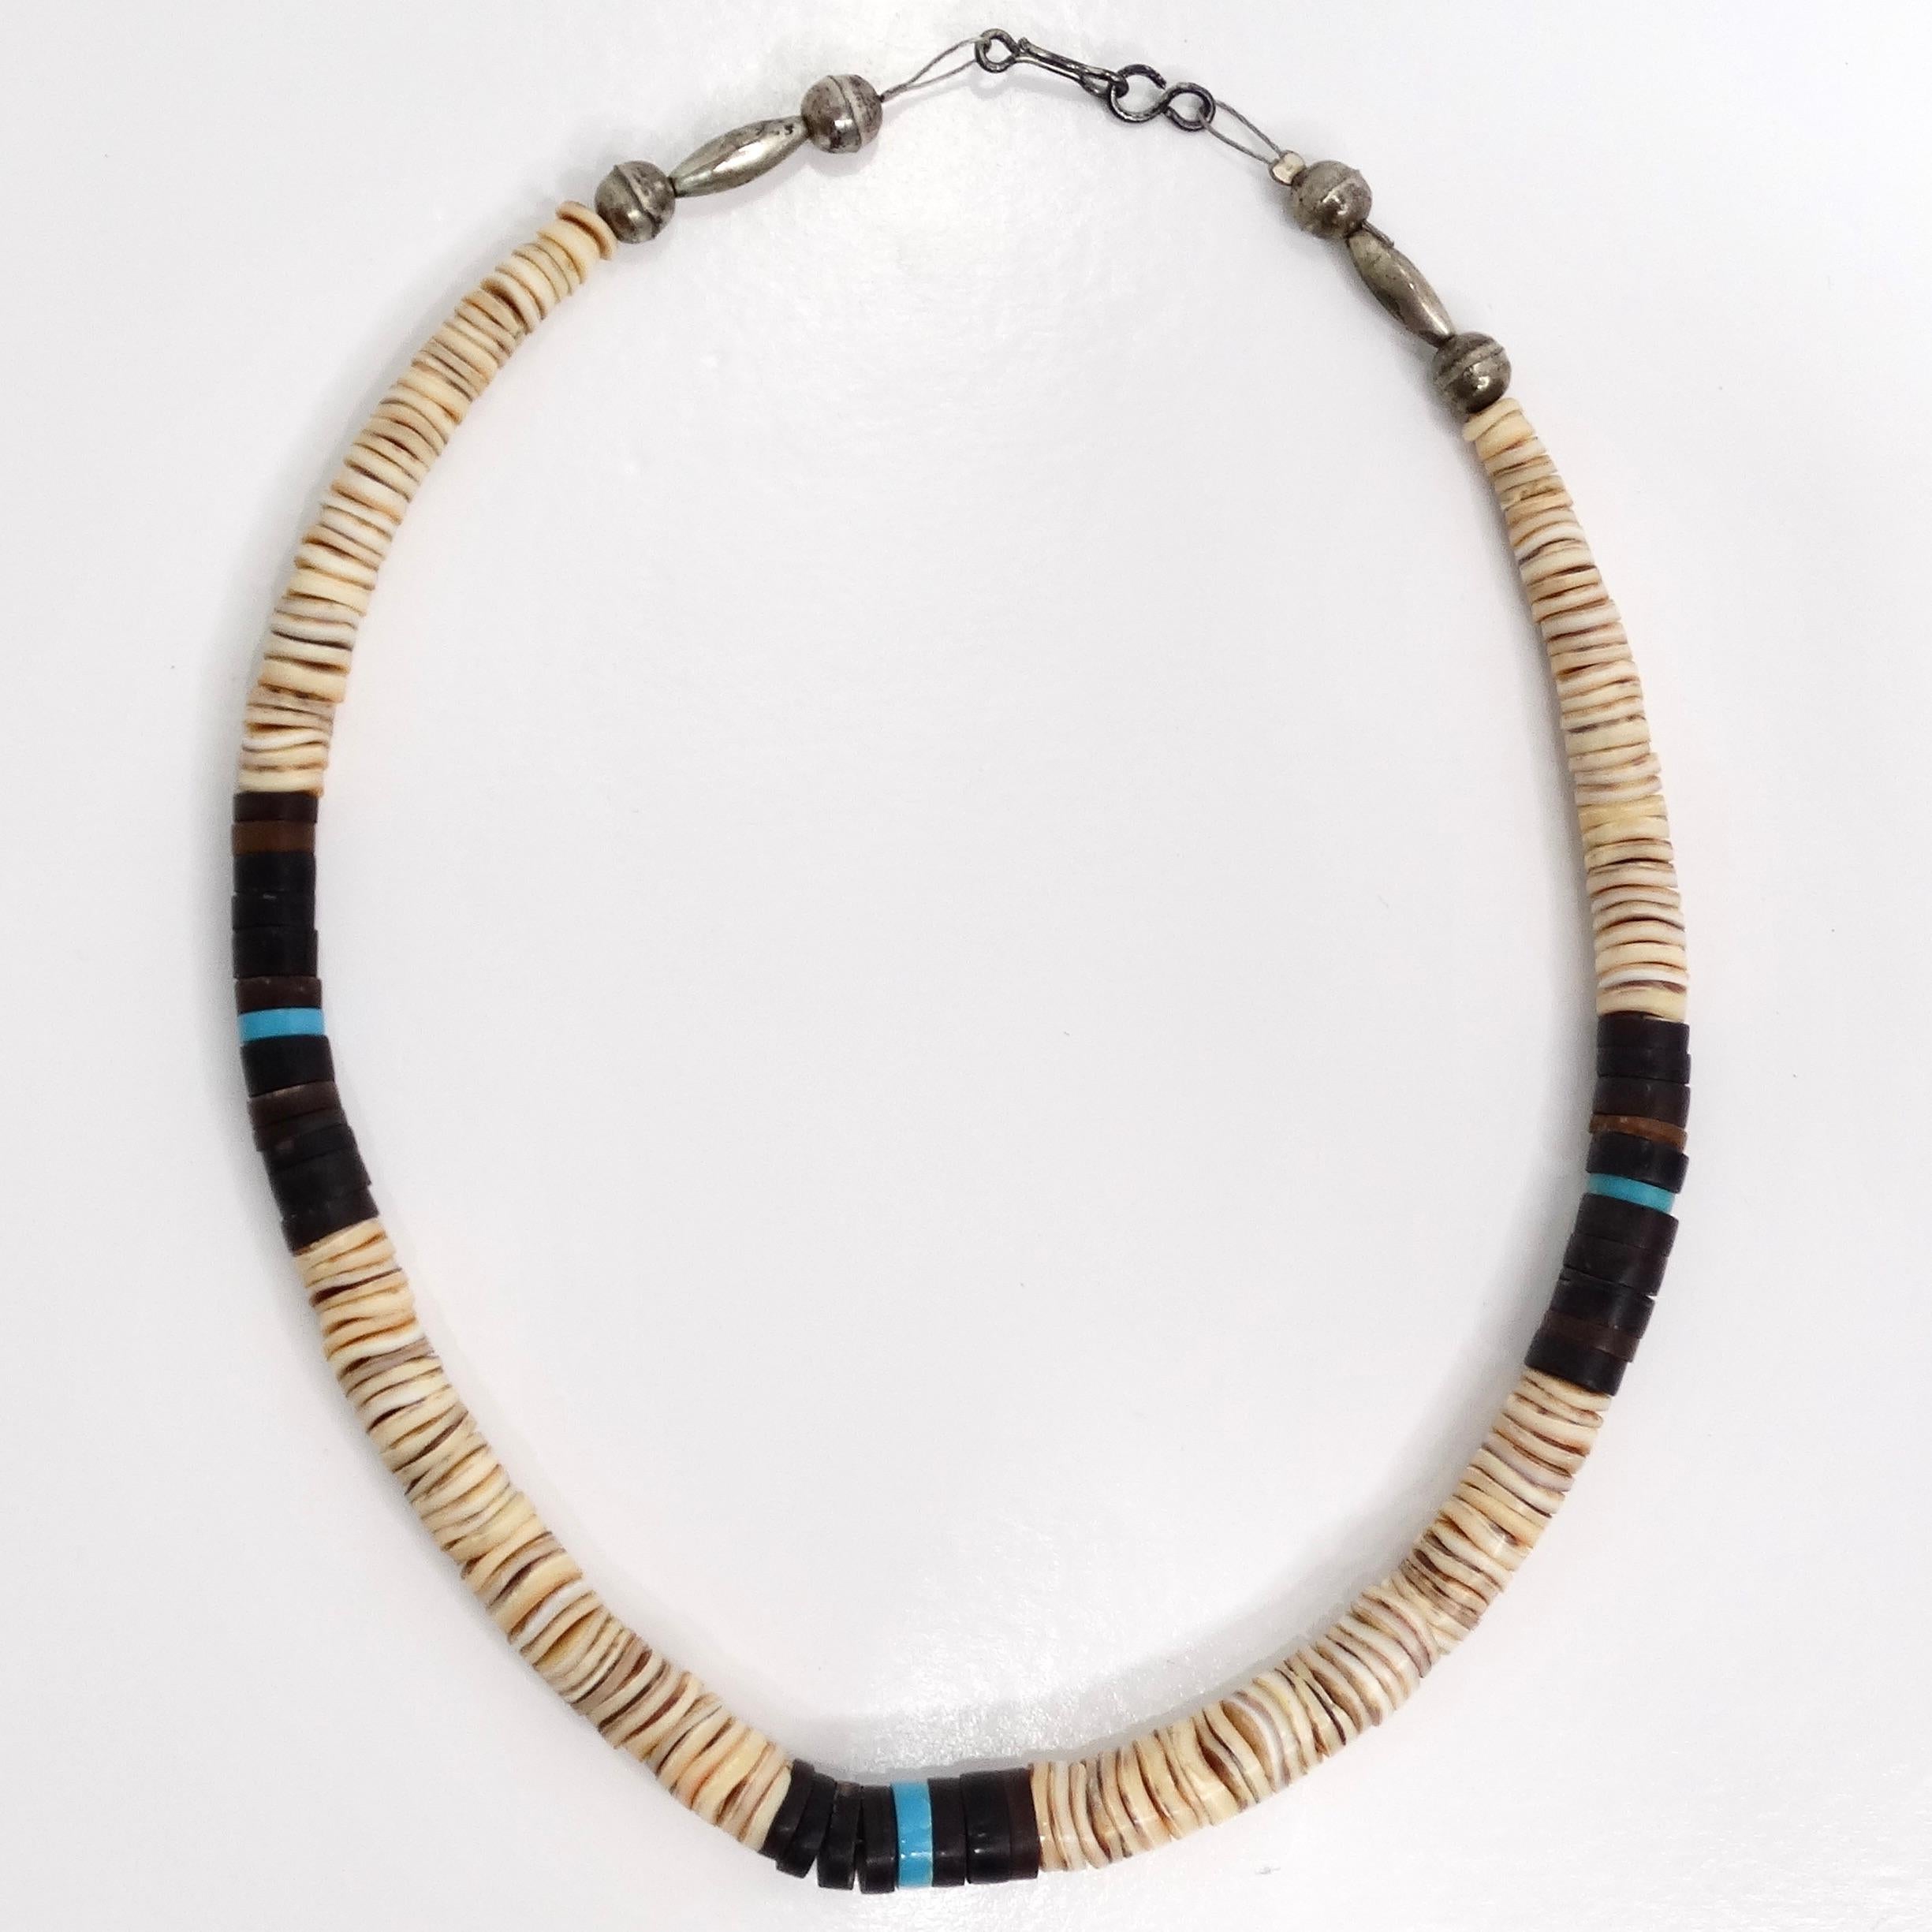 Werten Sie Ihre Vintage-Schmuckkollektion mit der atemberaubenden 1950er Türkis Muschel Perlenkette auf. Dieses exquisite Halsband zeichnet sich durch eine harmonische Mischung aus leuchtend blauen, türkisfarbenen, schwarzen und elfenbeinfarbenen